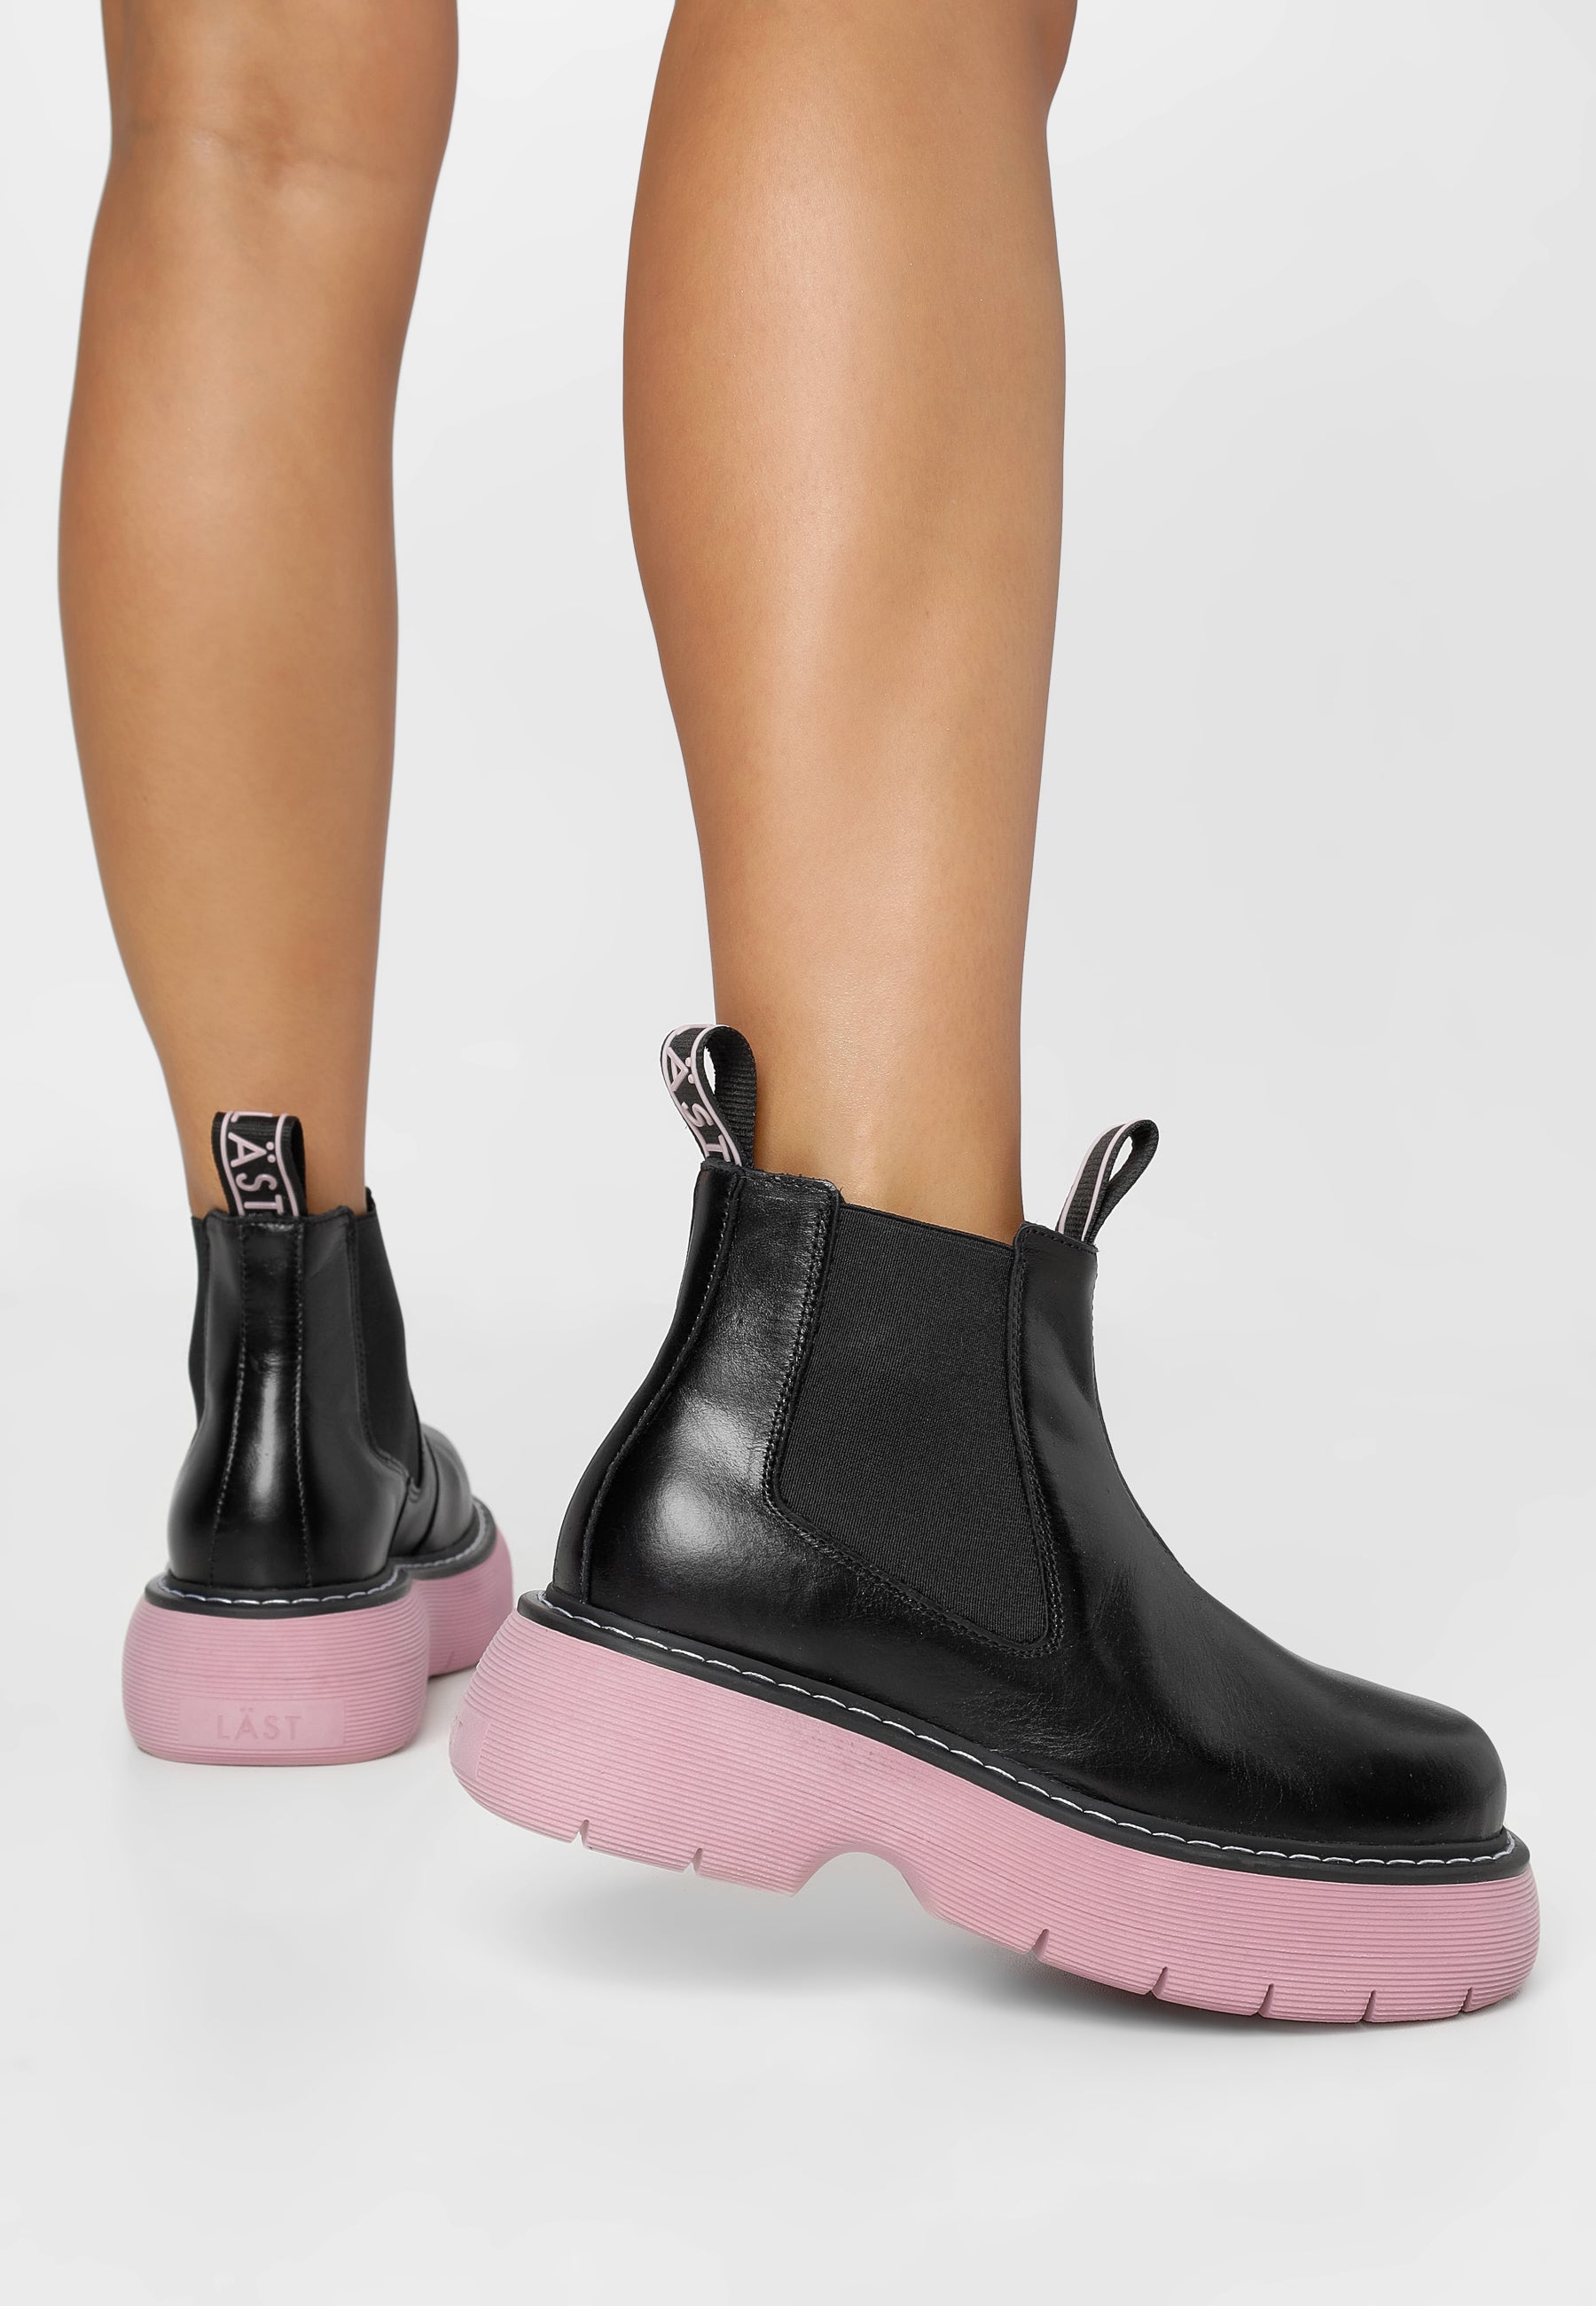 Ella Black Pink Leather Chelsea Boots LAST1529 - 7